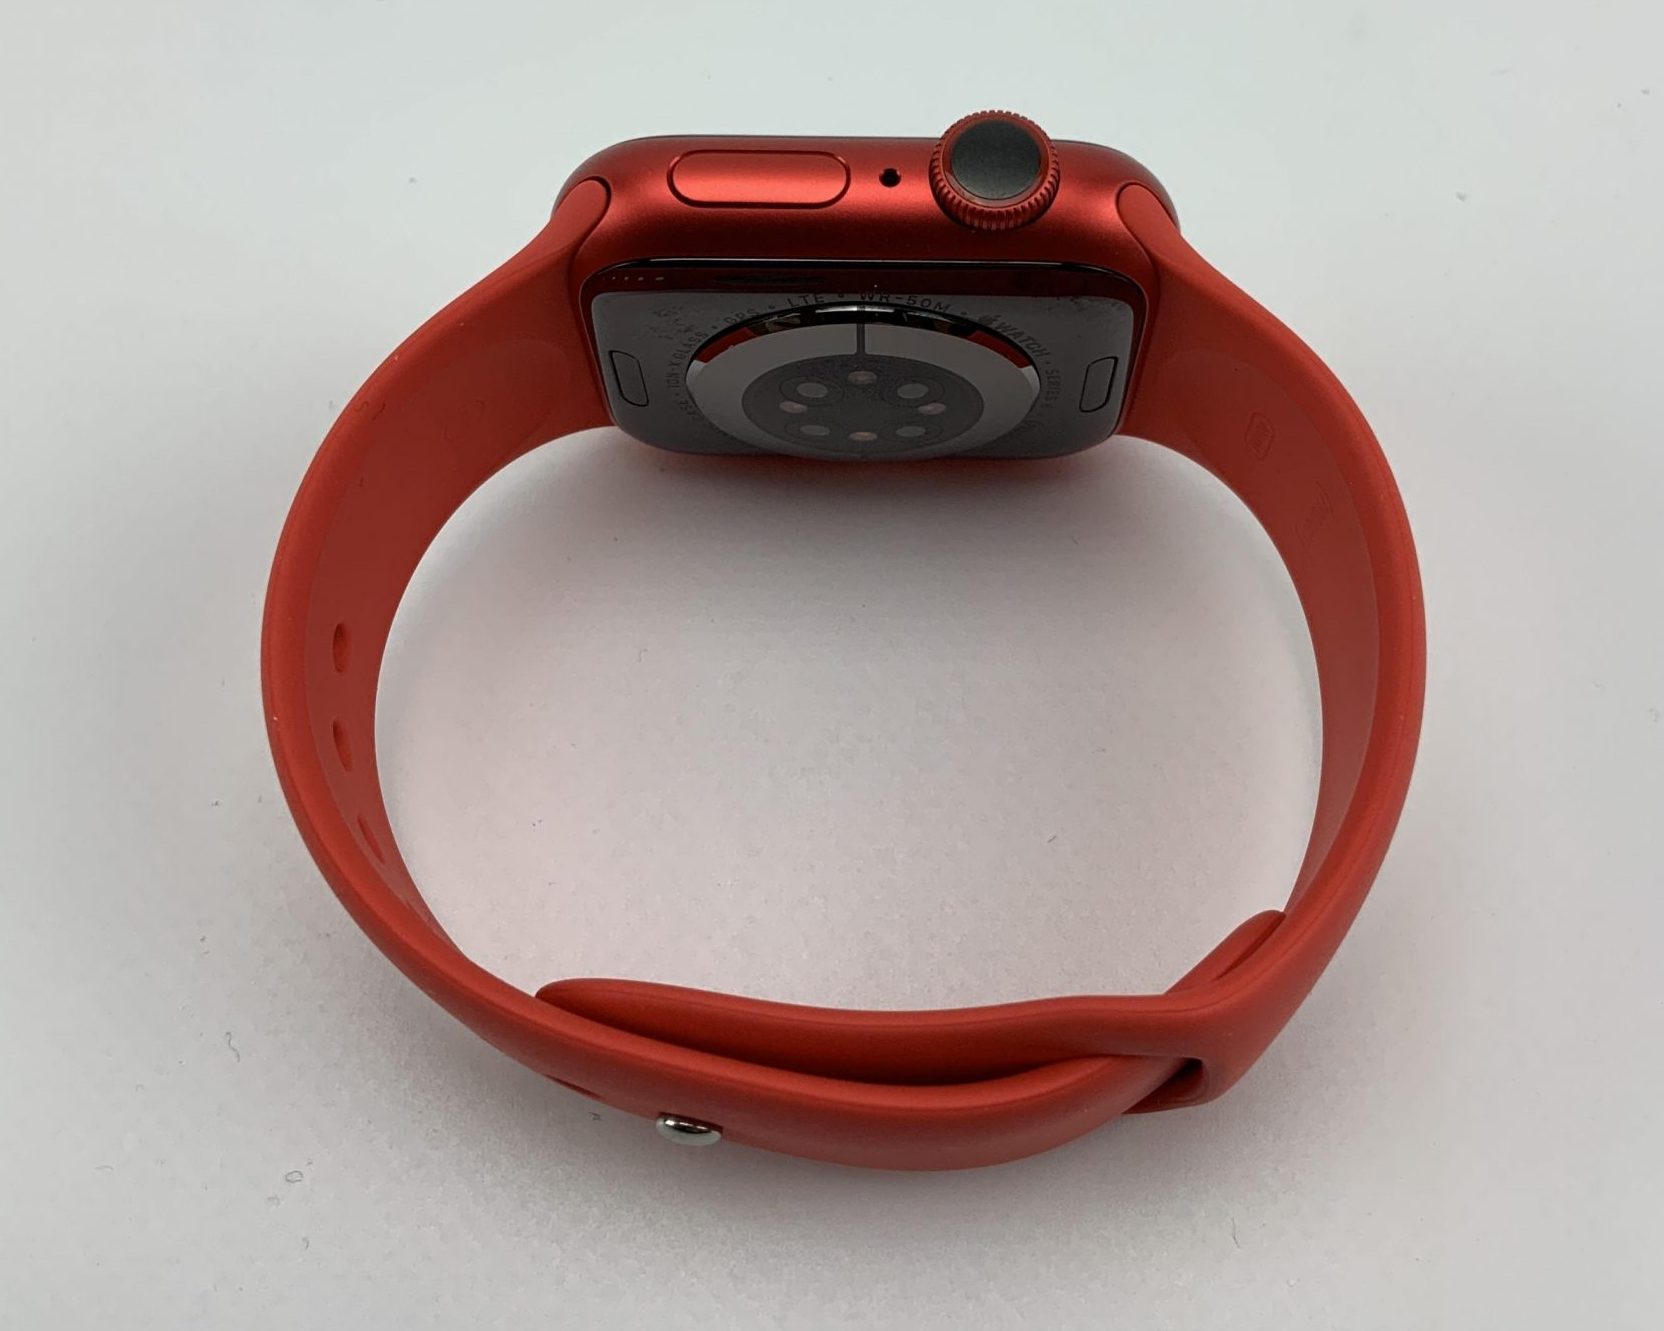 Watch Series 6 Aluminum Cellular (40mm), Red, imagen 2